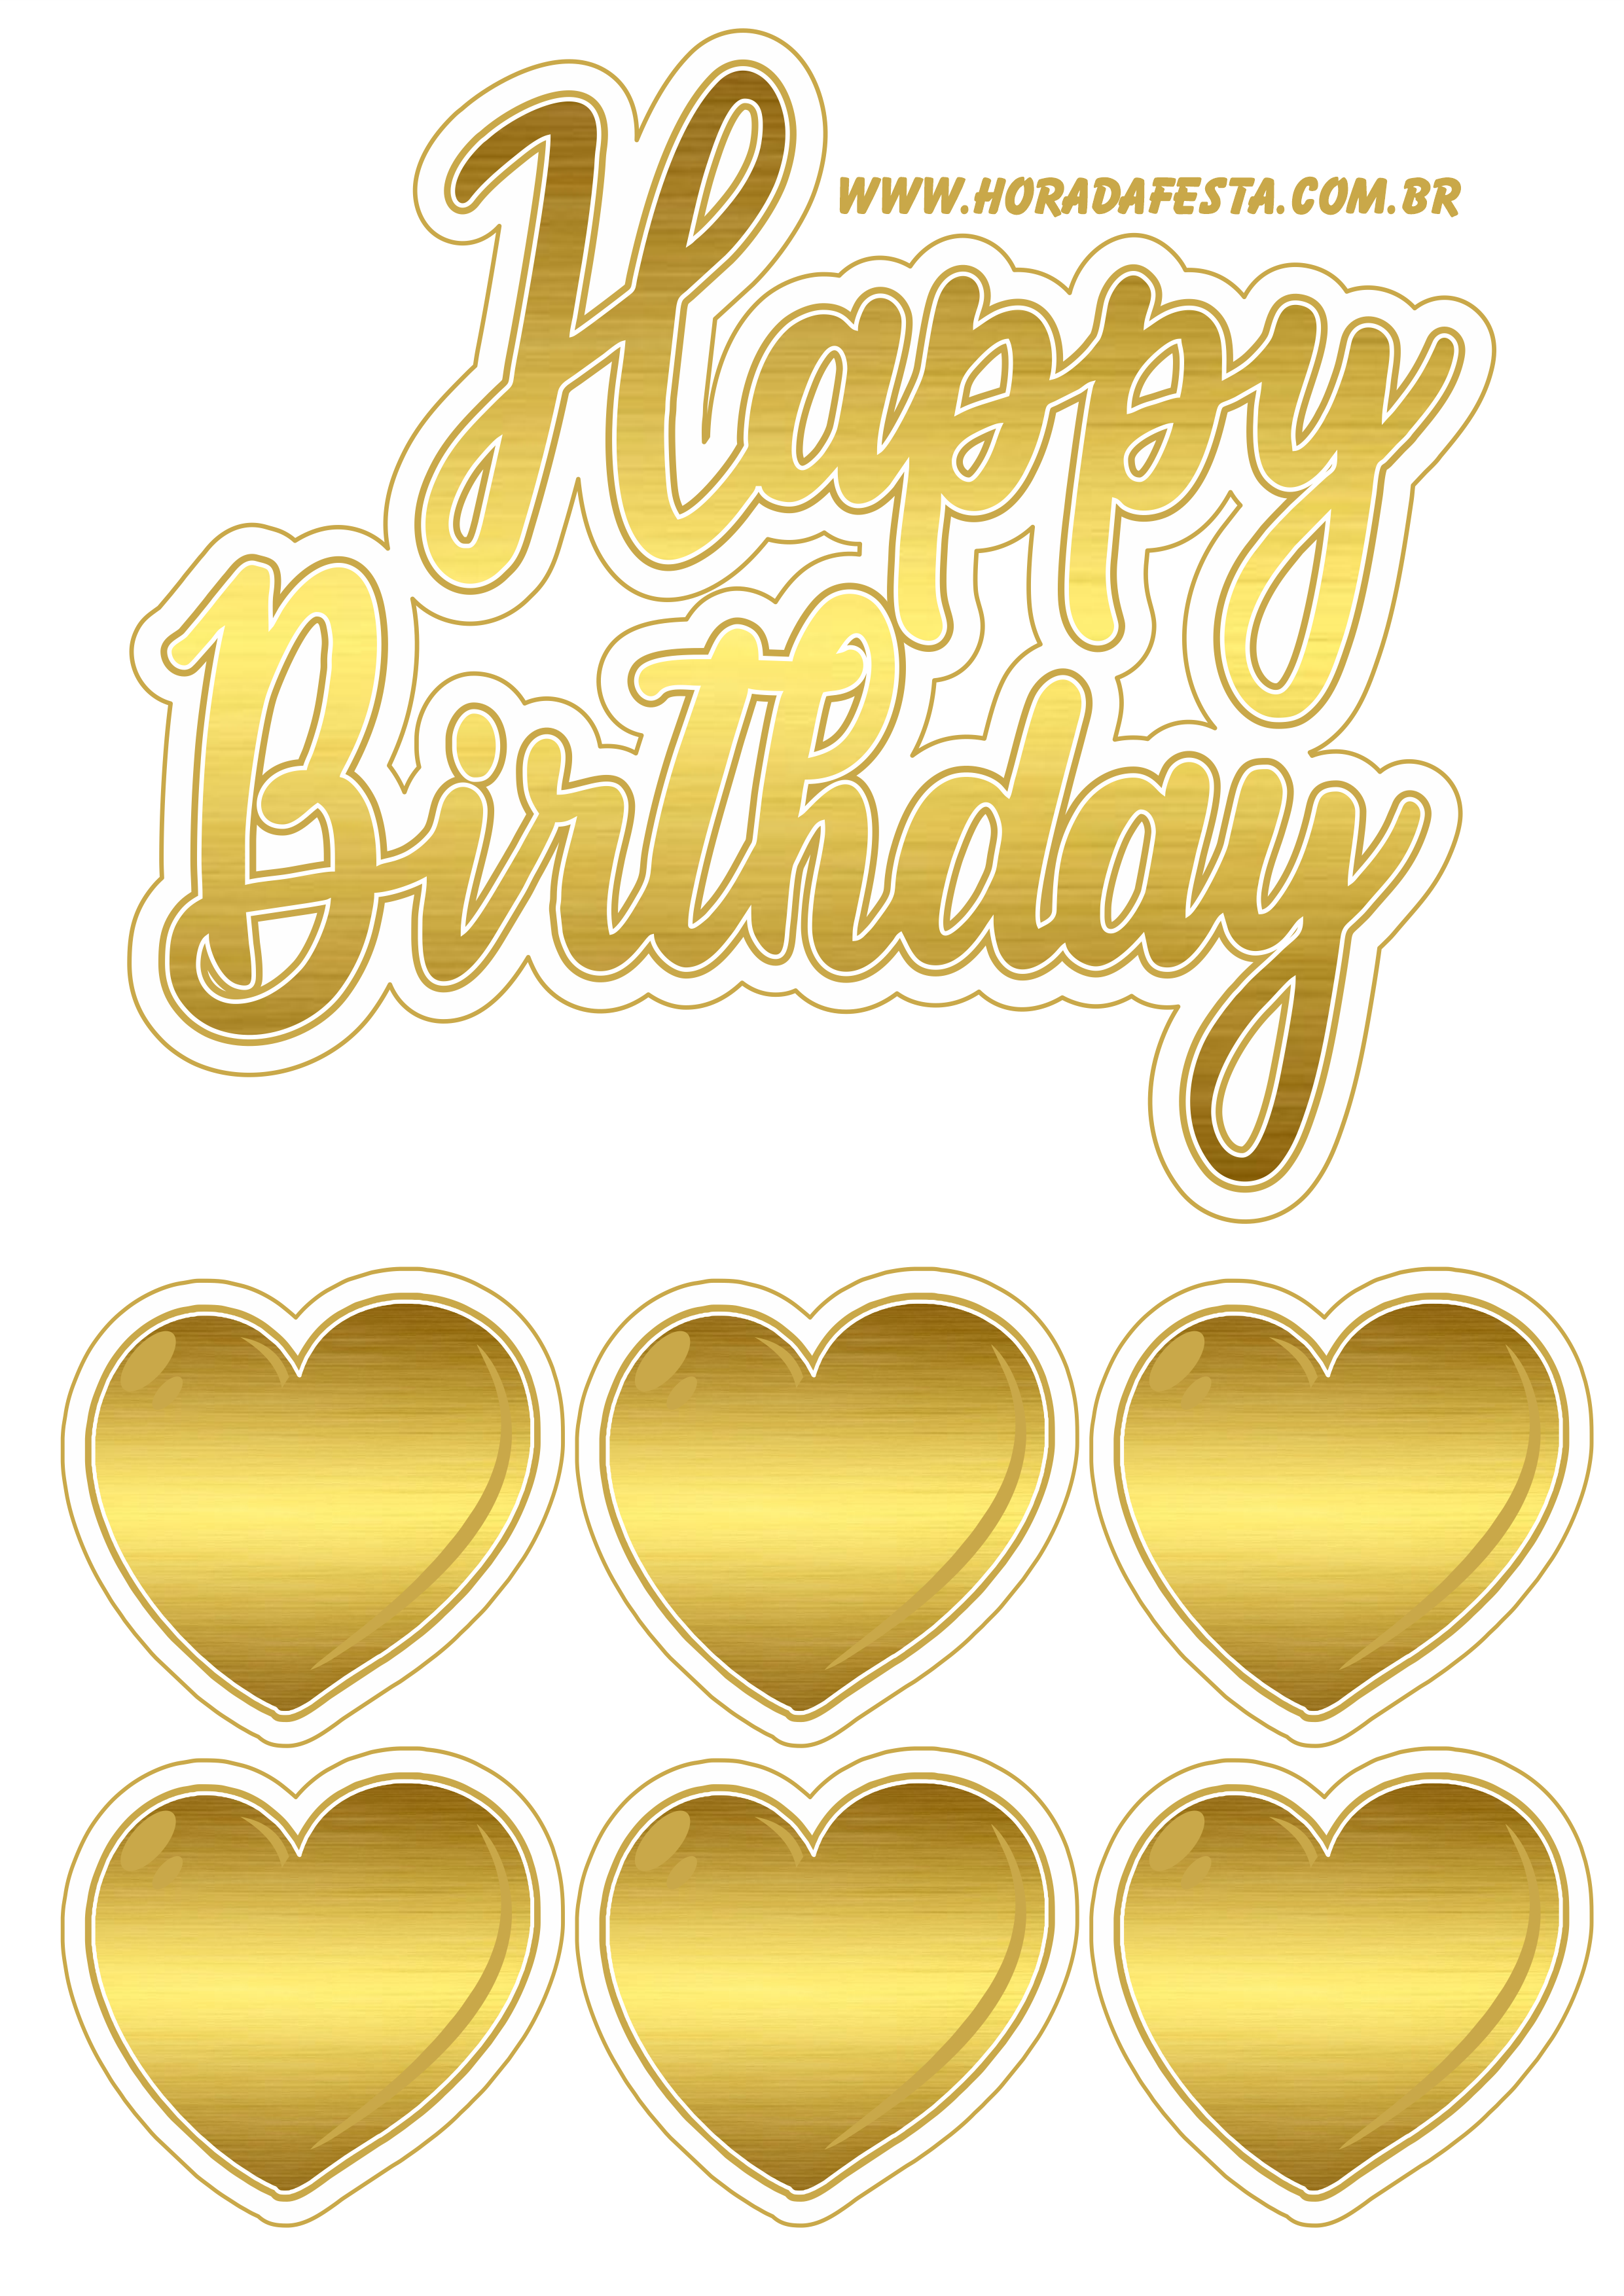 Happy Birthday baixar topo de bolo dourado com corações design grátis png